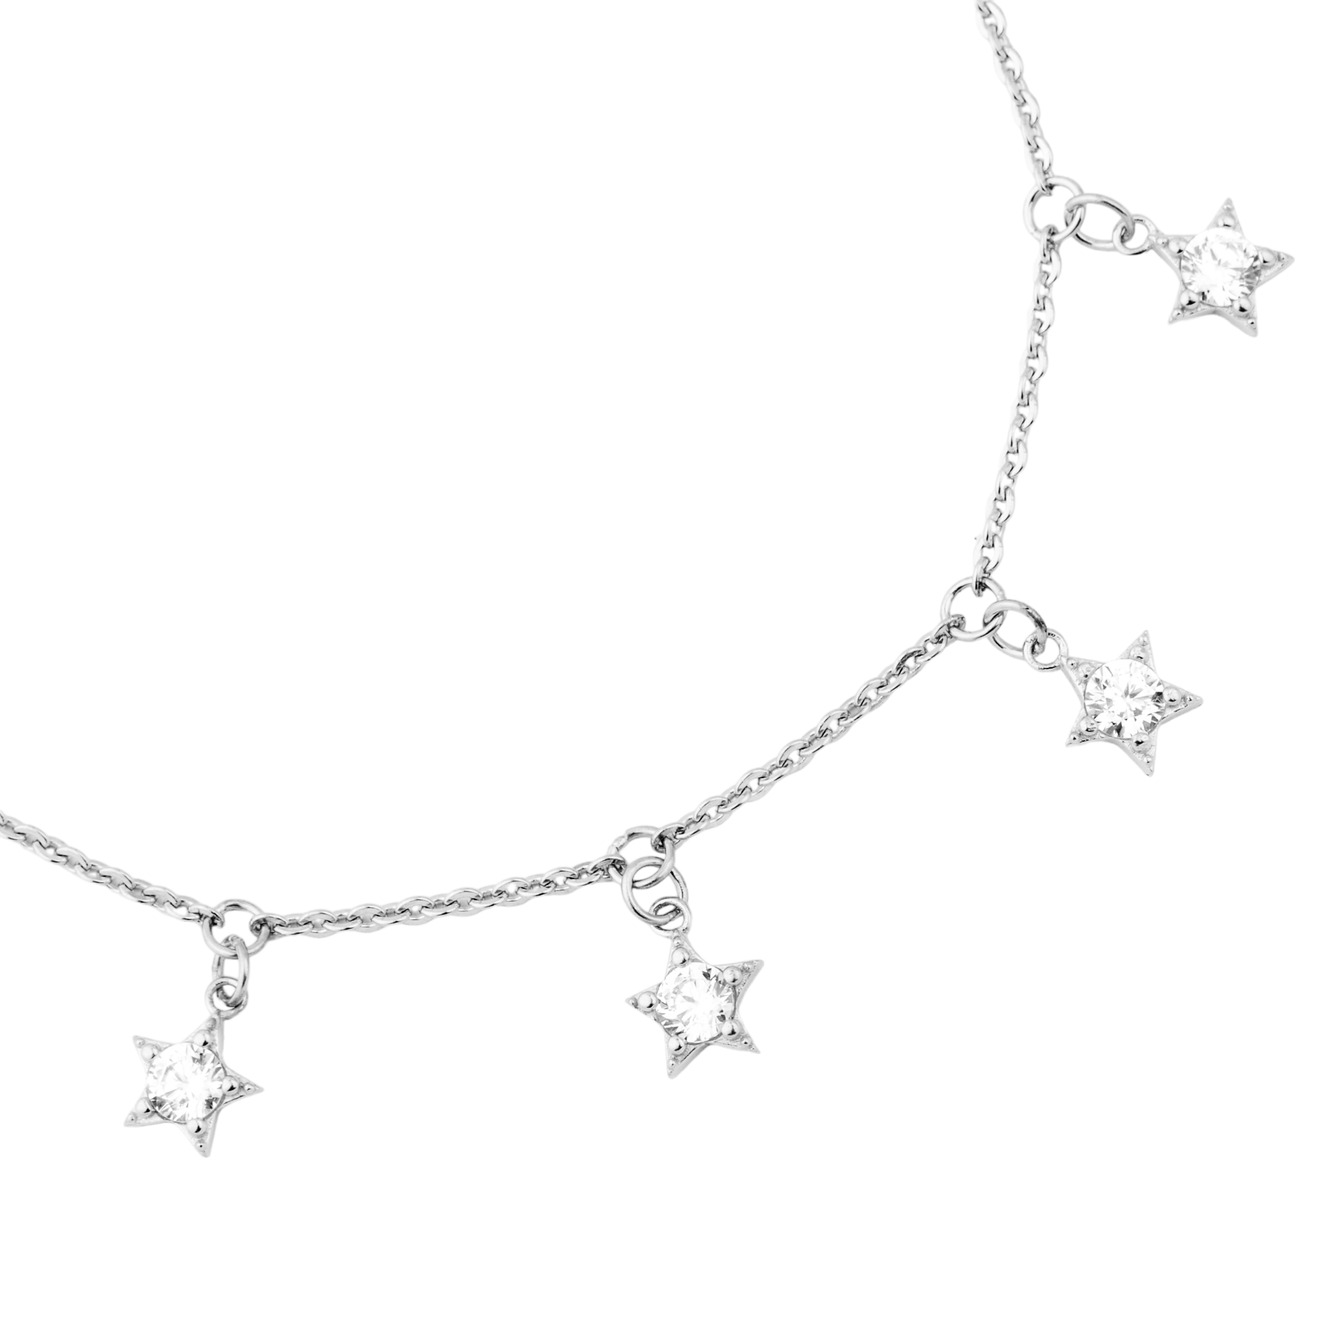 SKYE Серебряный браслет со звездами skye позолоченный браслет с кастами круг и звездами маленькими восьмиконечными